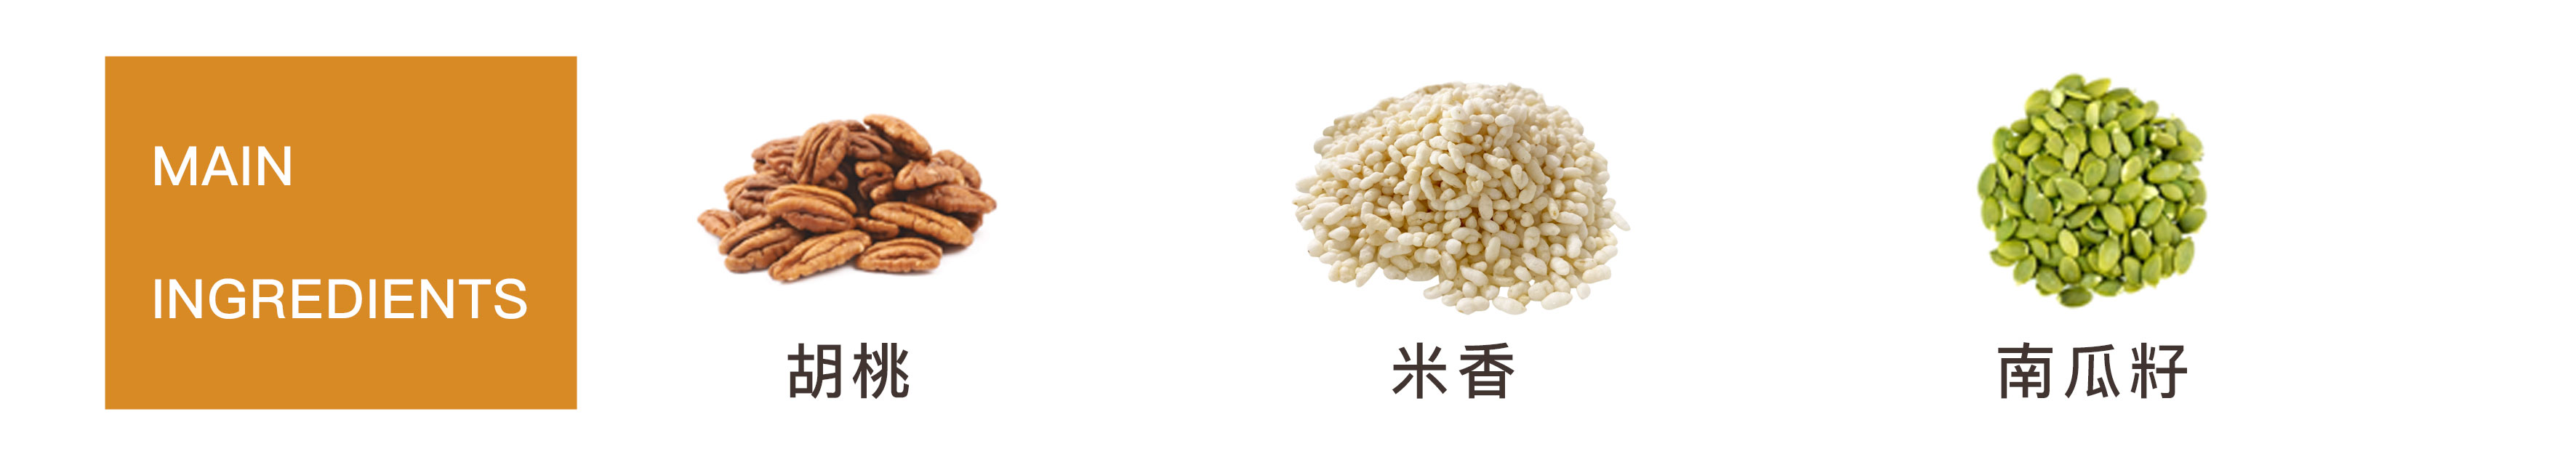 米香三寶柑燕麥脆片主要成分-胡桃-米香-南瓜子